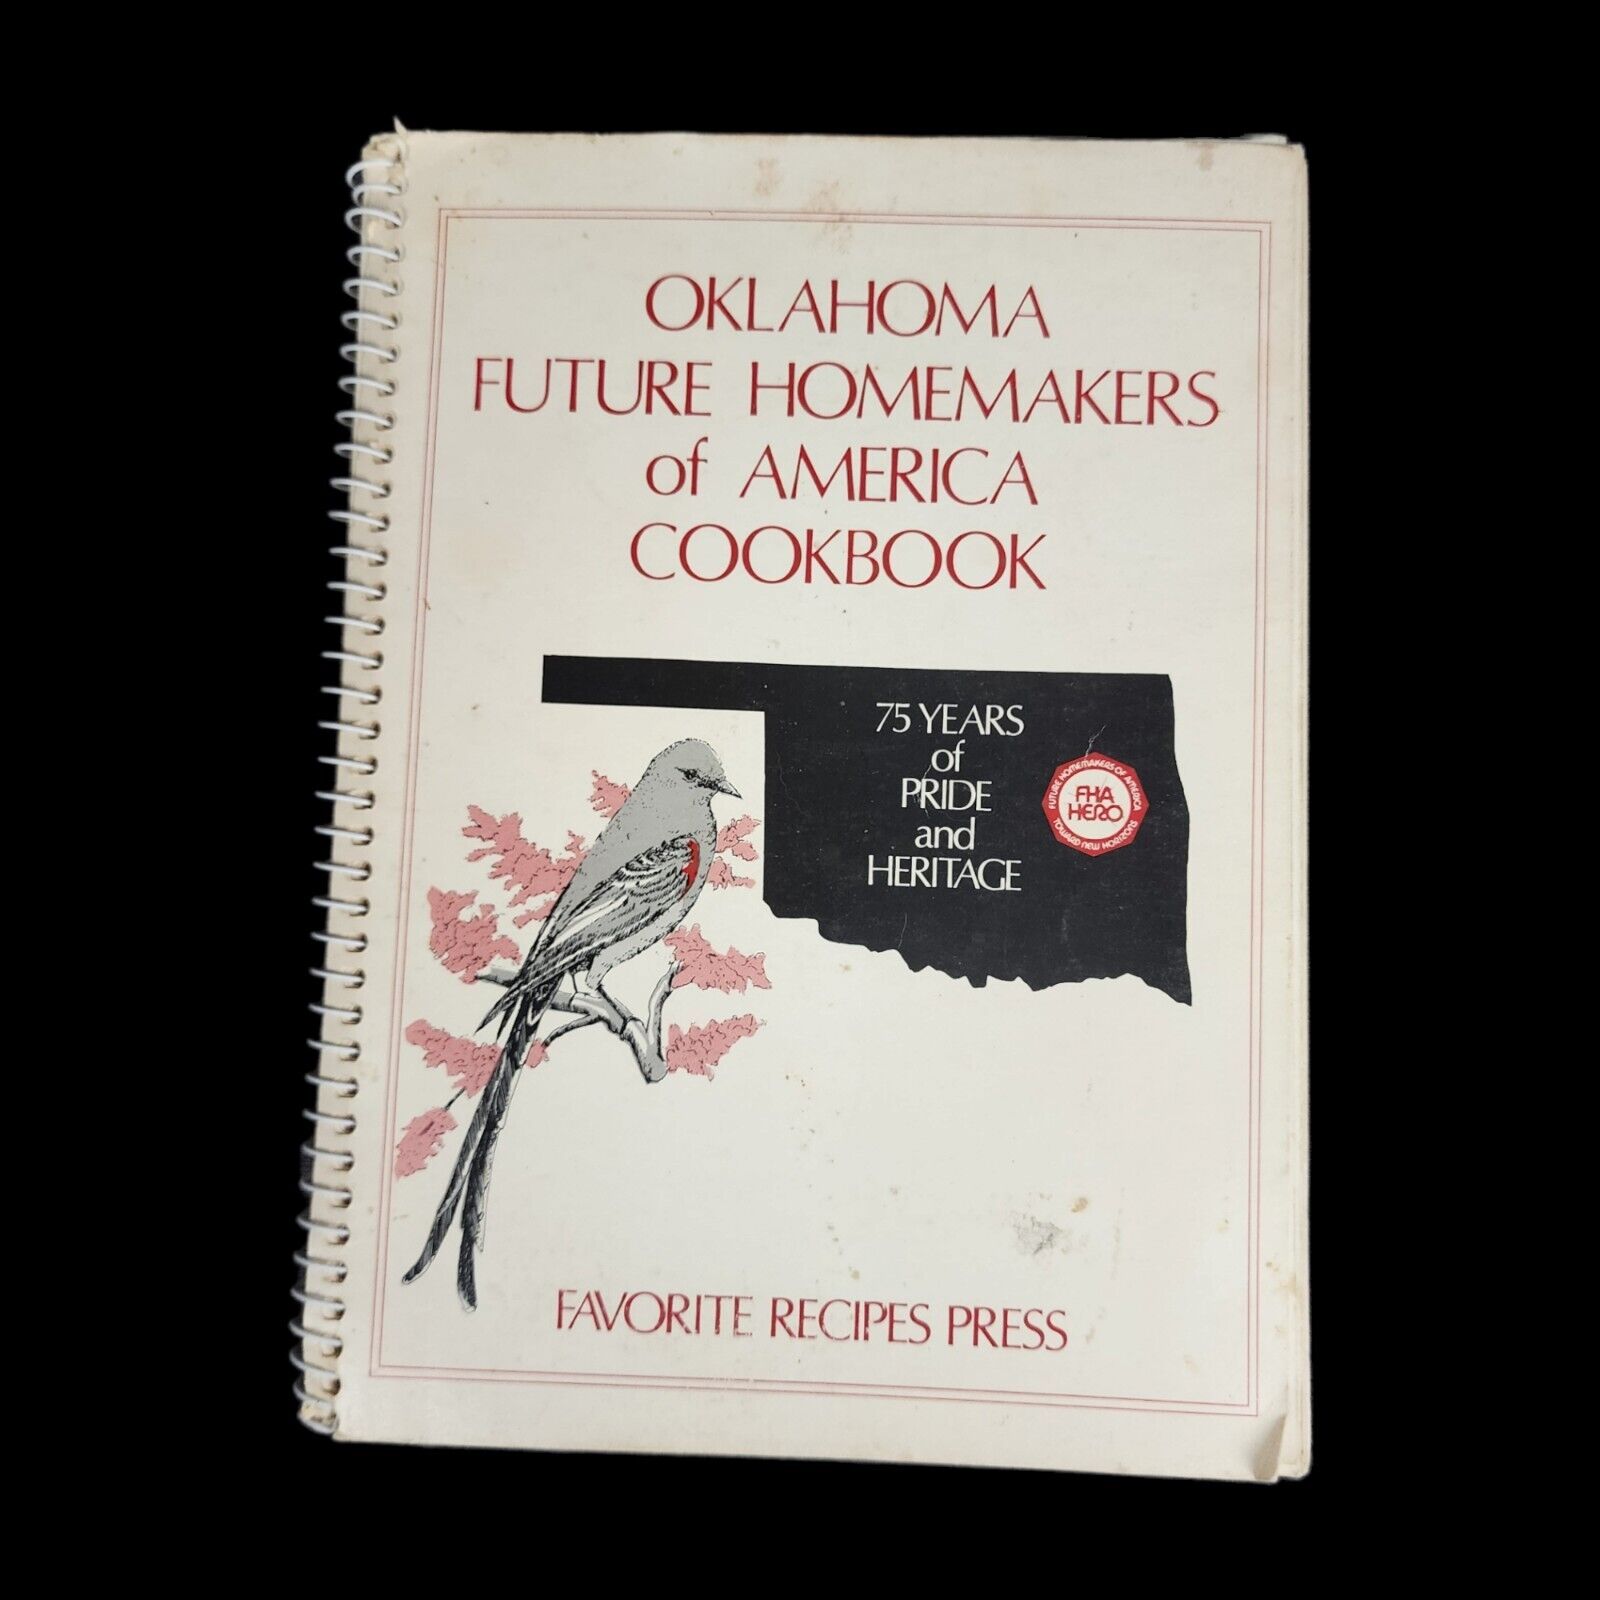 Oklahoma Future Homemakers of America Heritage Anniversary Cookbook FHA/HERO